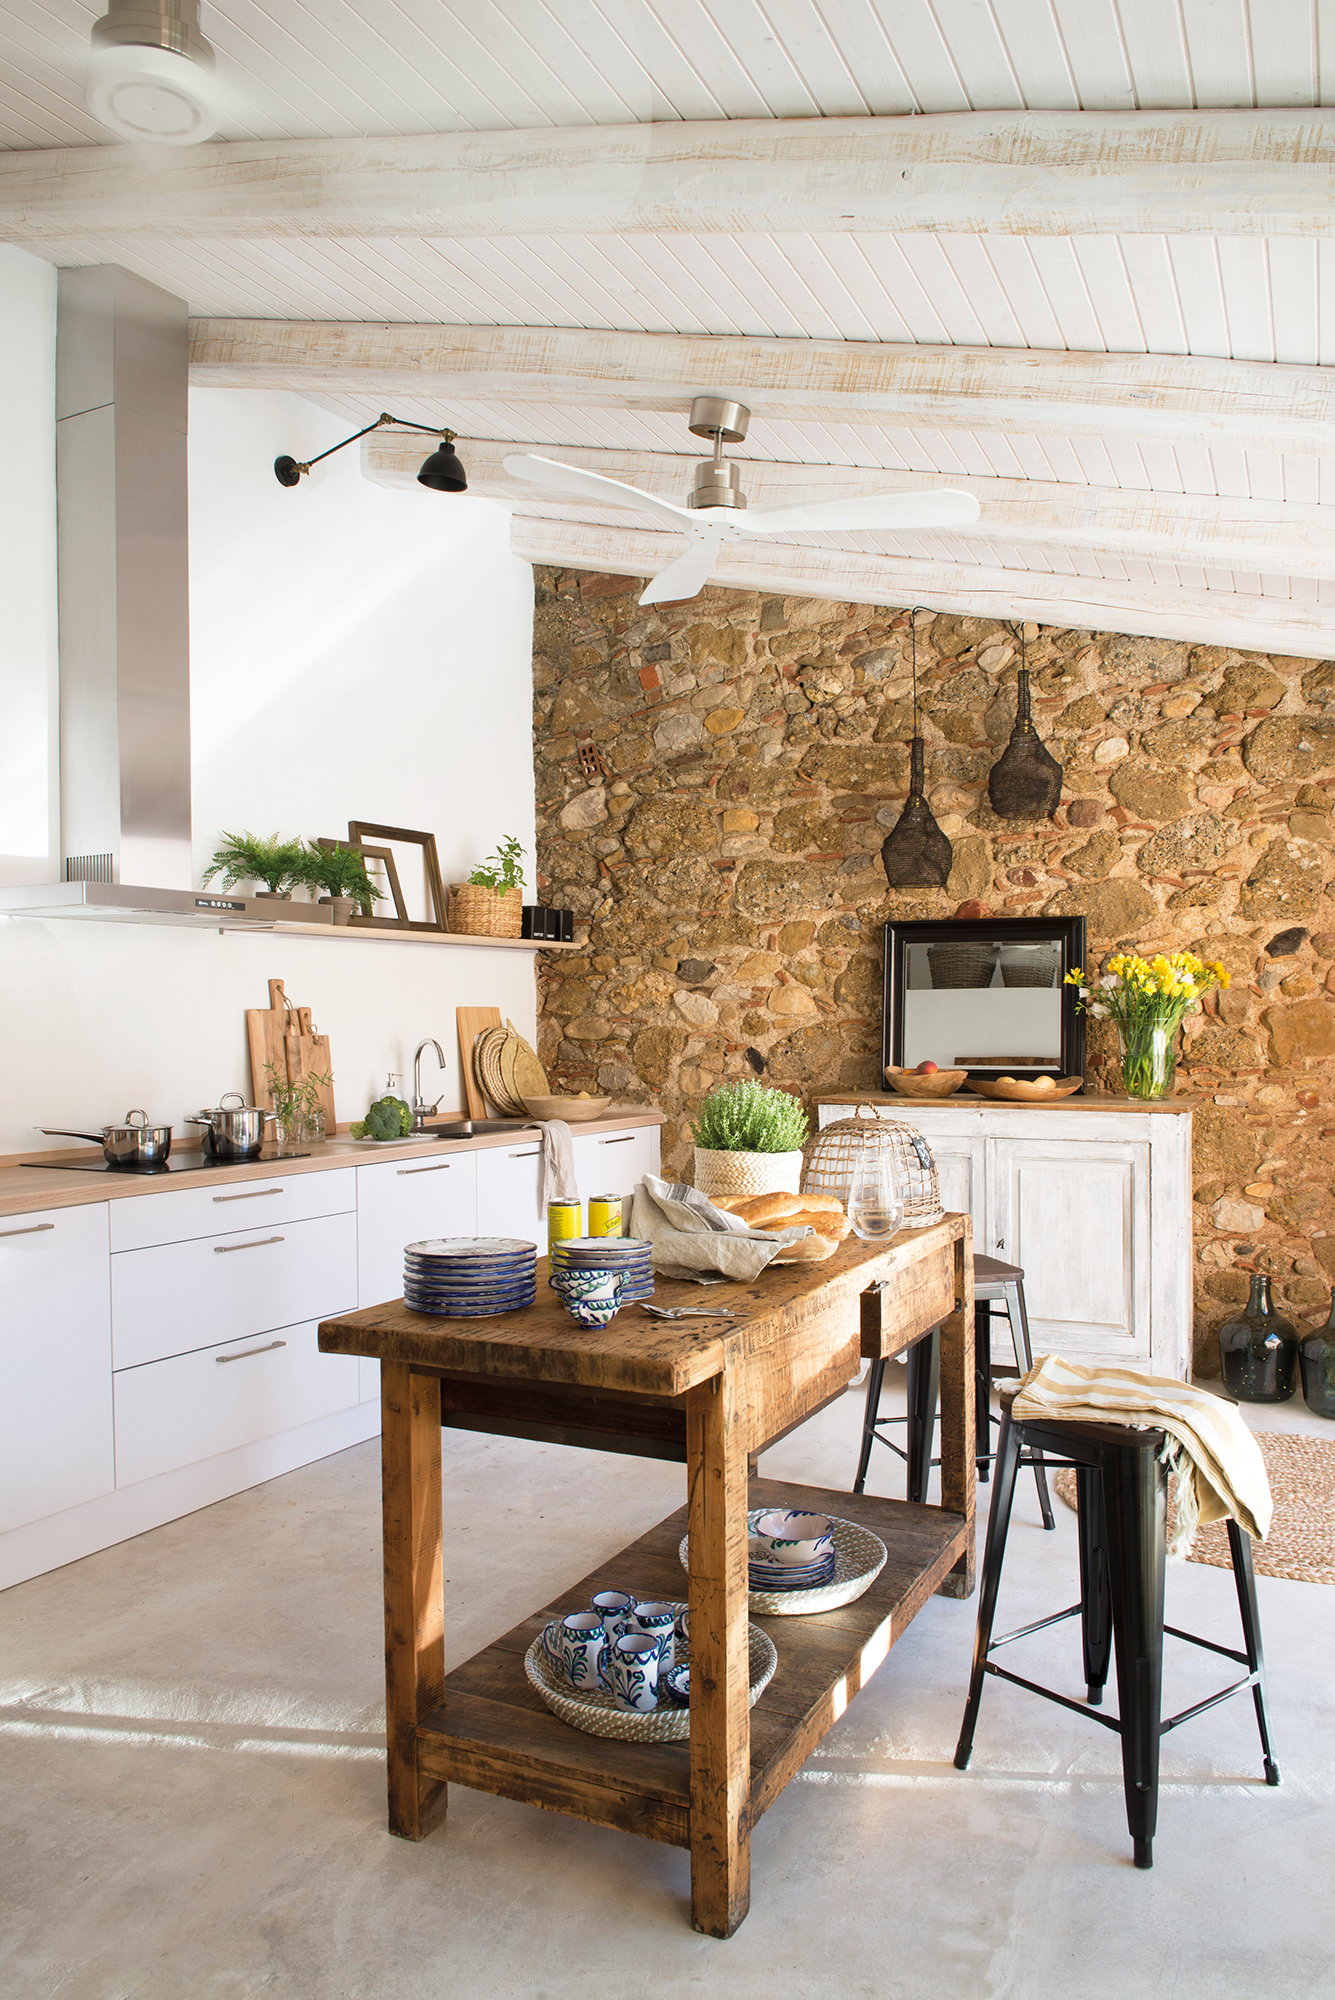 Cocina blanca con muebles modernos, paredes de piedra e isla con aparador de madera recuperado.